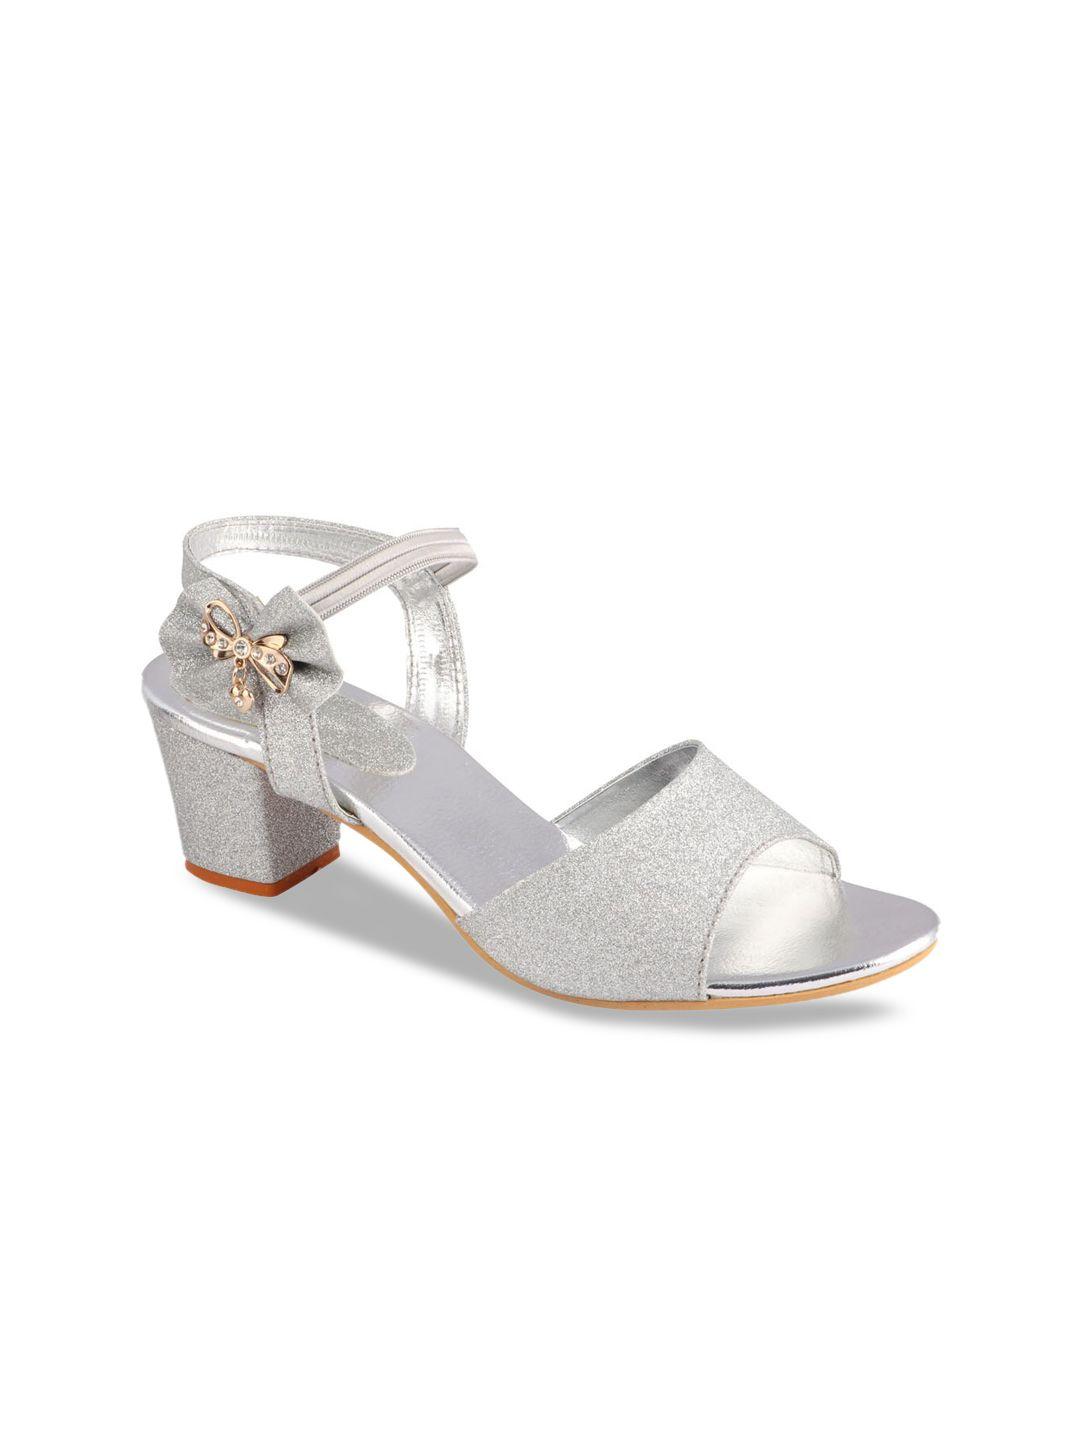 shoetopia-girls-silver-glitter-bow-detail-block-heels